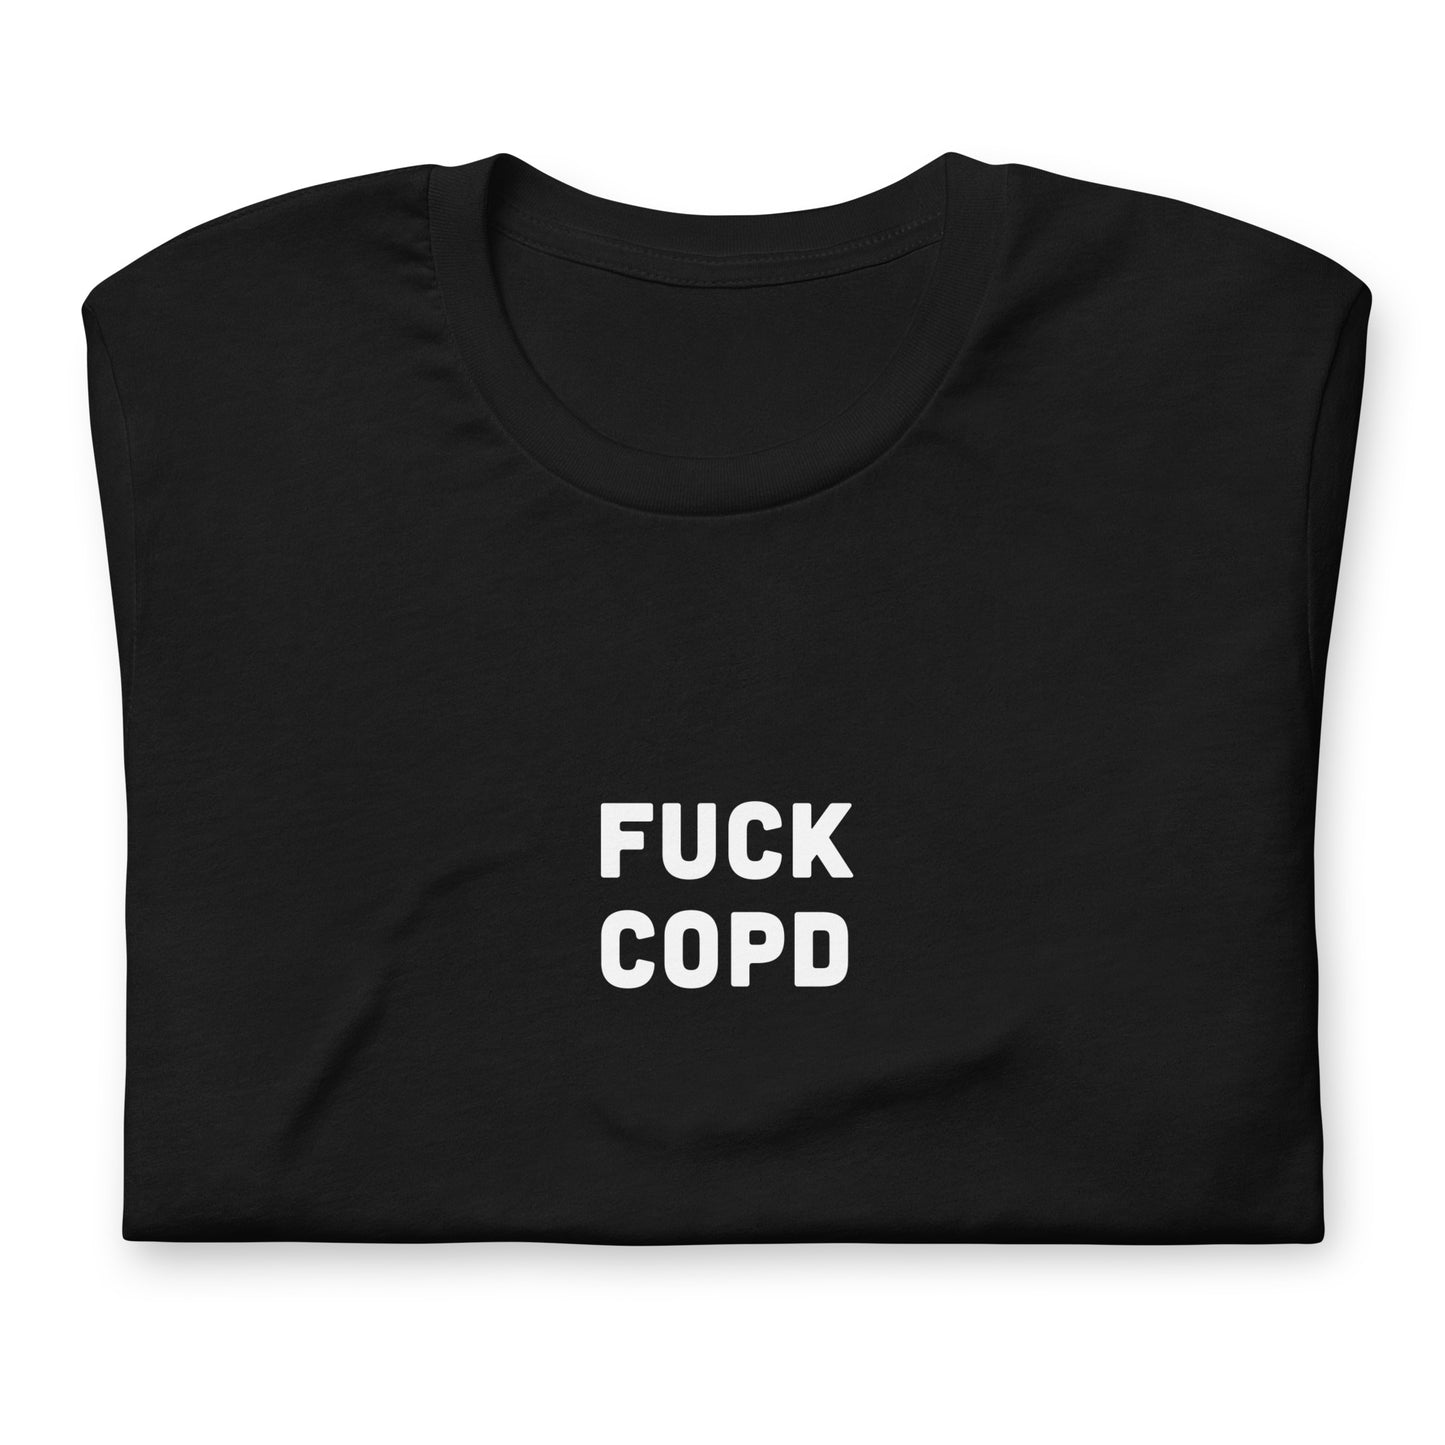 Fuck Copd T-Shirt Size M Color Black